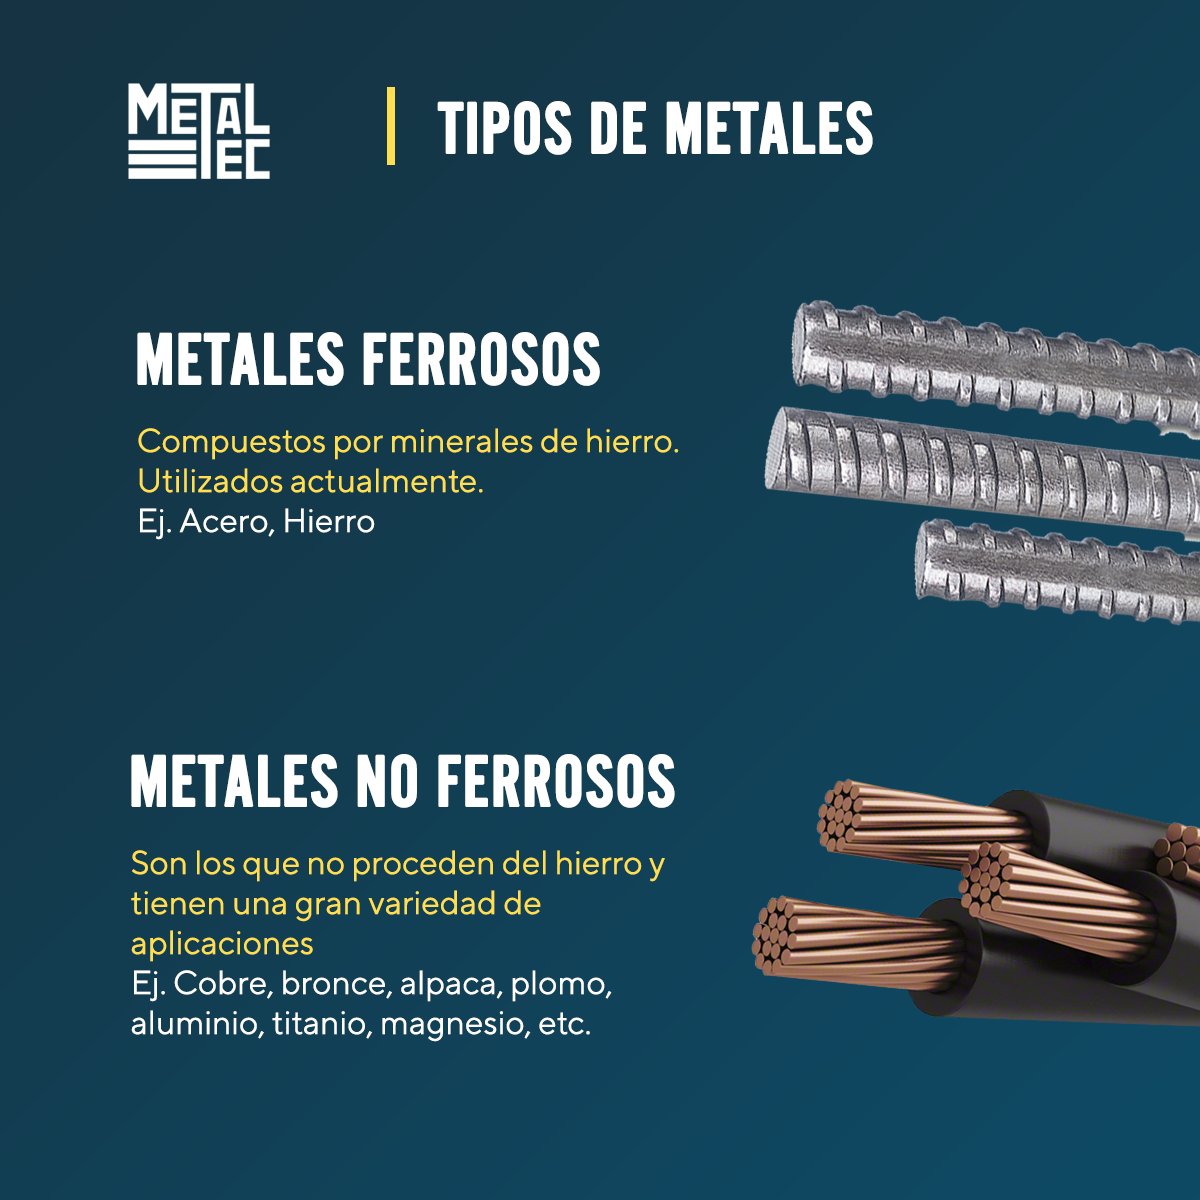 España Antagonista tabaco Metaltec on Twitter: "Te compartimos un poco de información sobre qué tipos de  metales existen. Nunca está de más saber las especificaciones del material  con el que trabajamos. https://t.co/fYmUK2cZaF" / Twitter